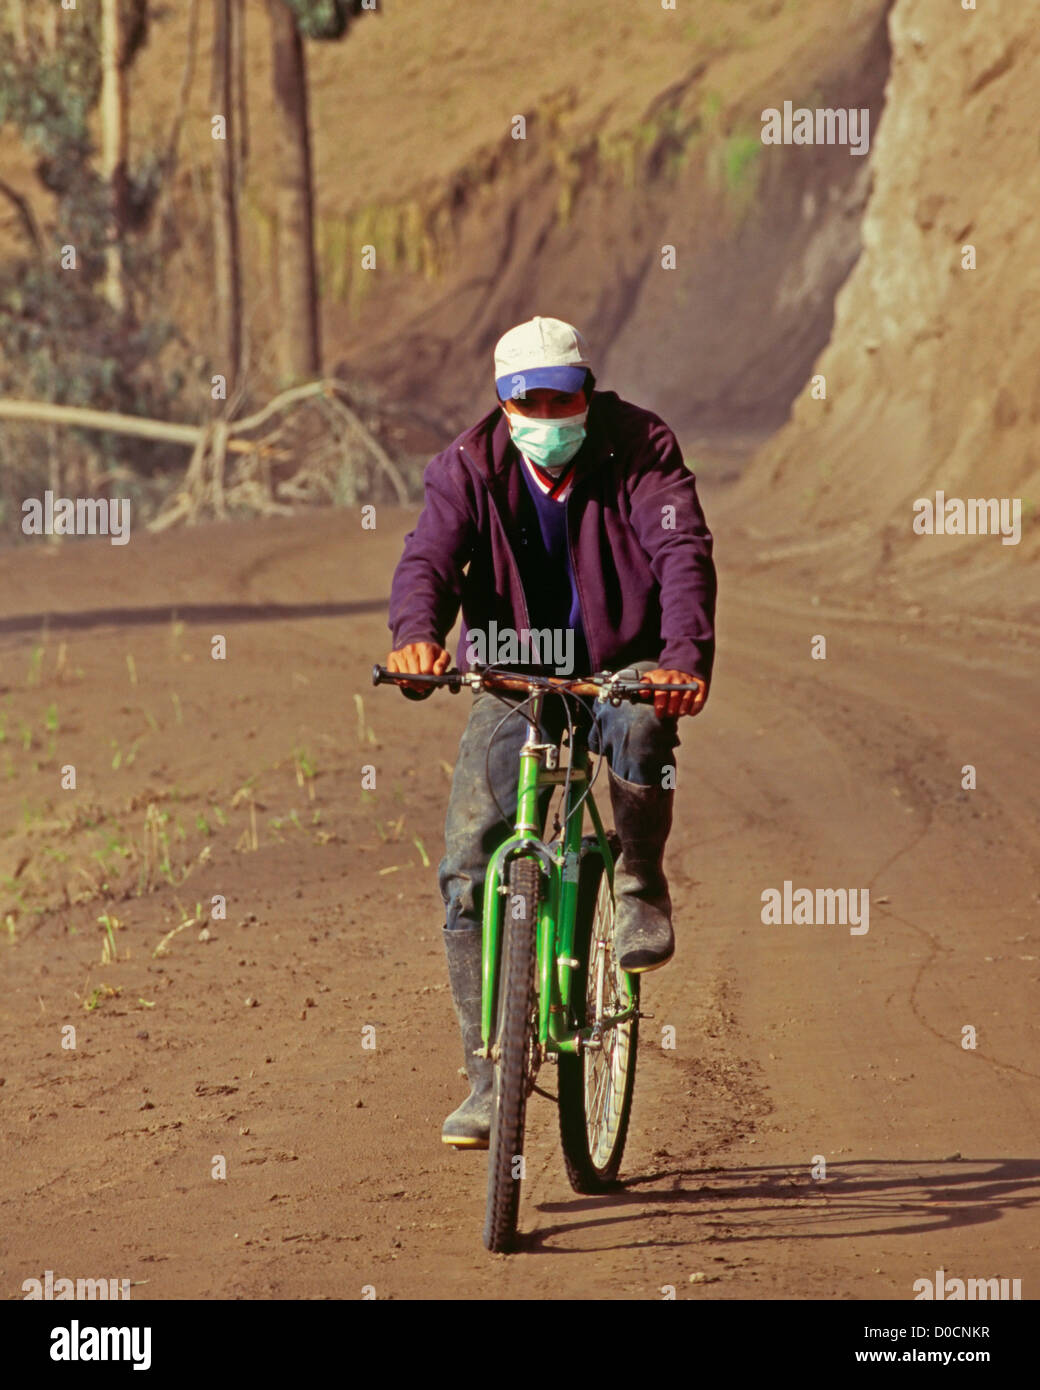 Un cycliste porte un masque pour protéger ses poumons de poussière volcanique Banque D'Images